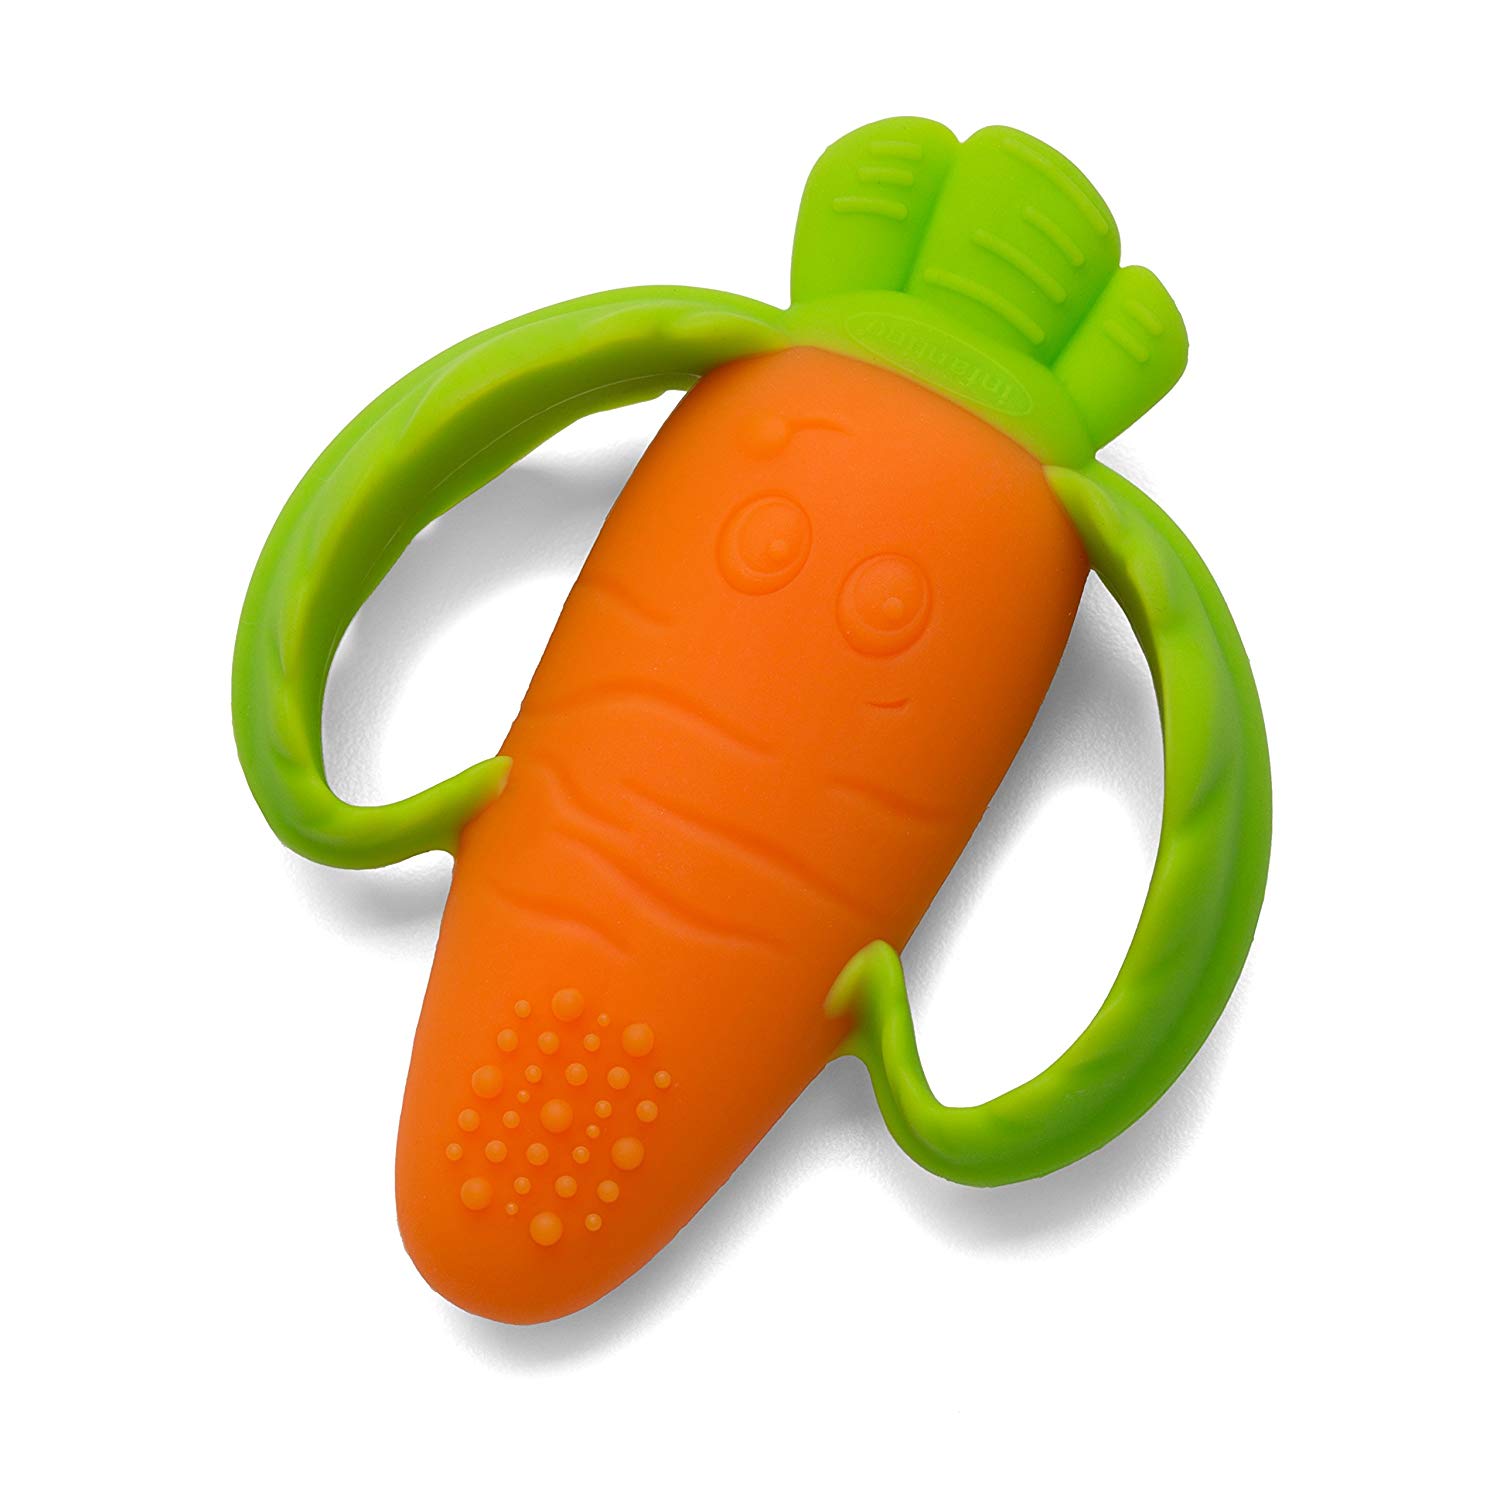 Infantino Developmental Food Design BPA Free Teething Toy